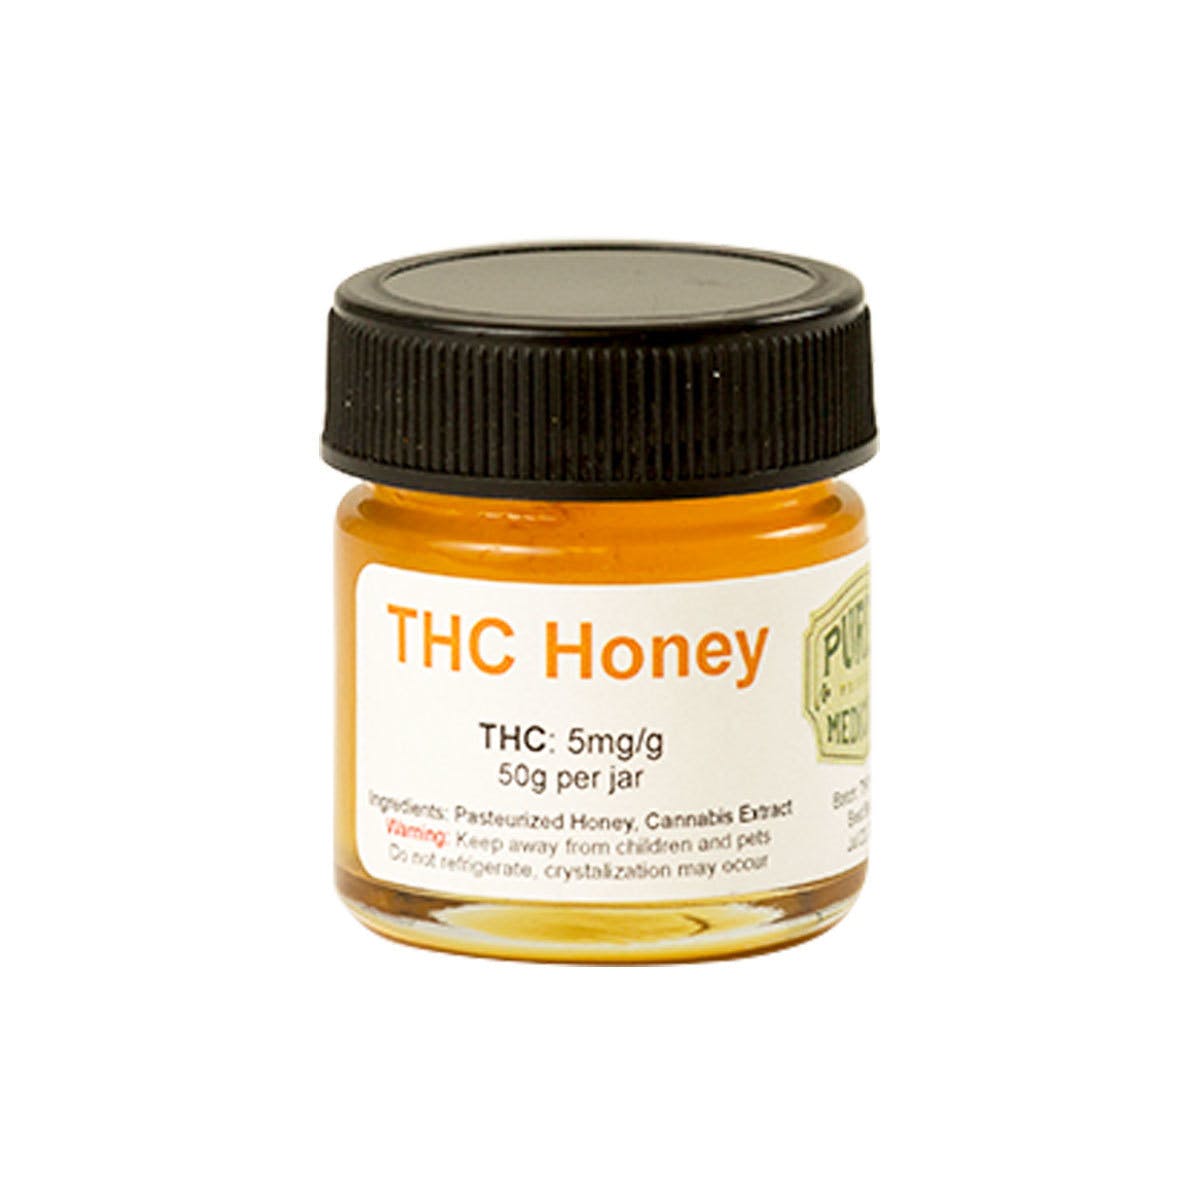 THC Honey 250mg